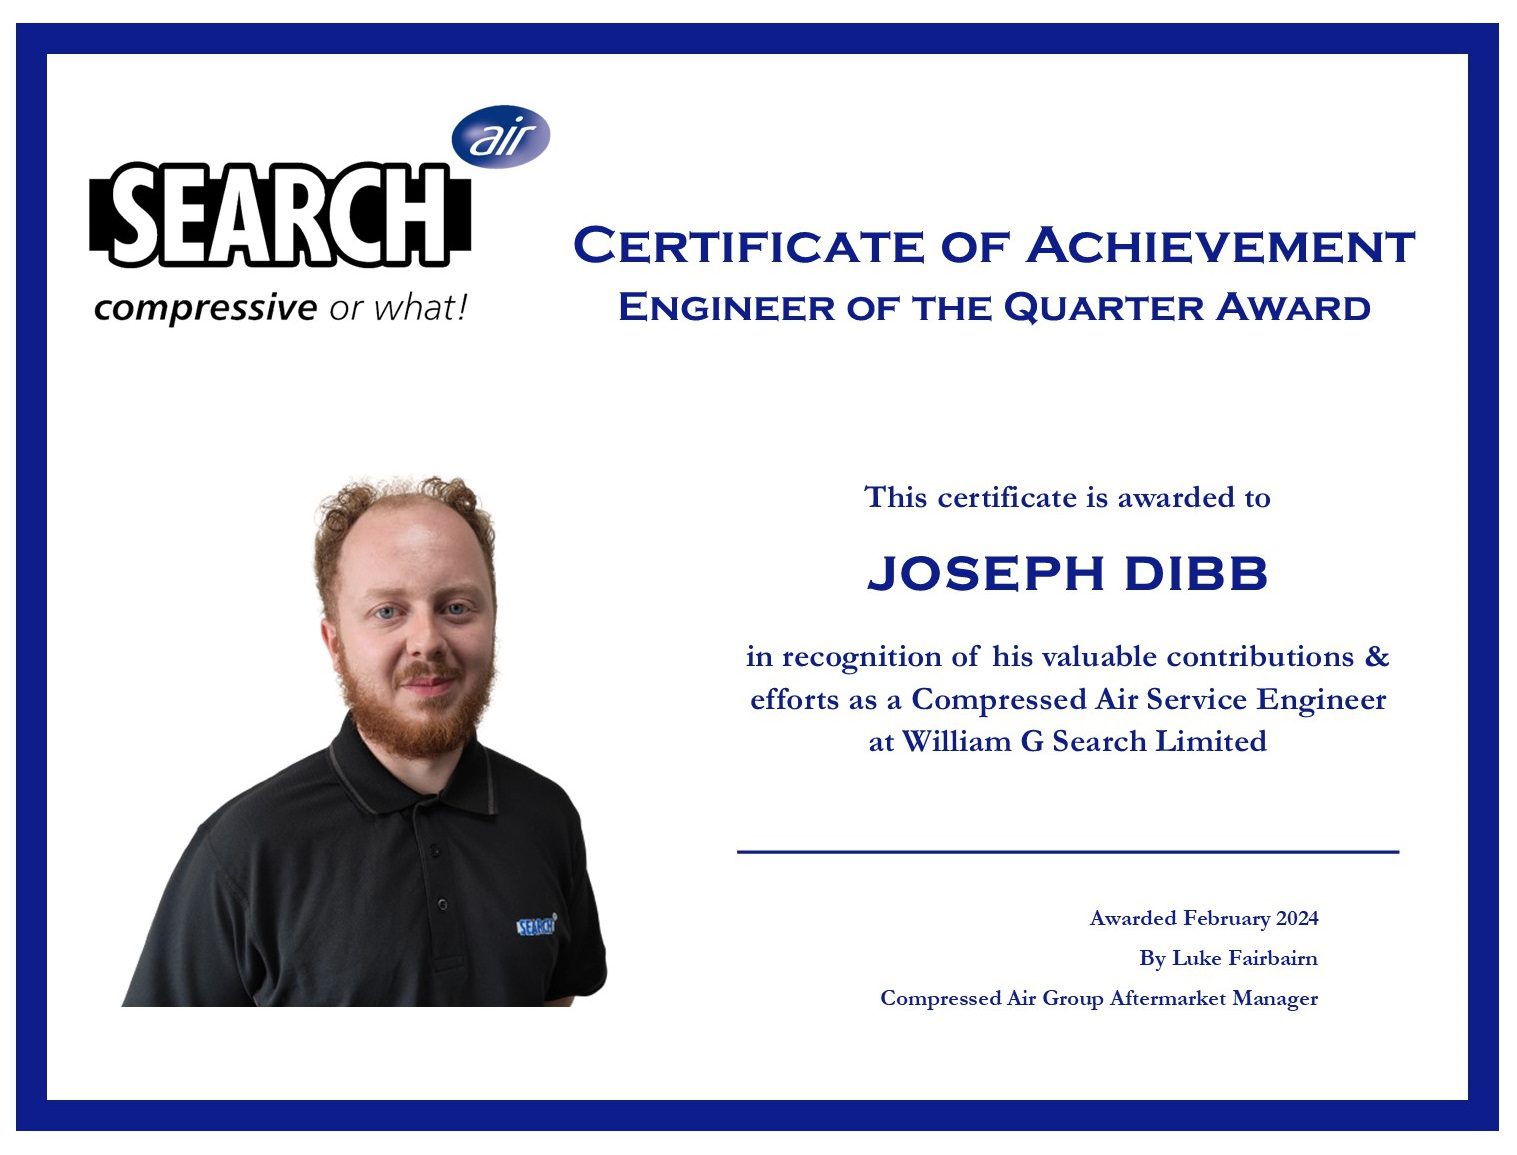 Joseph Dibb - Engineer of the Quarter Award - Febuary 2024